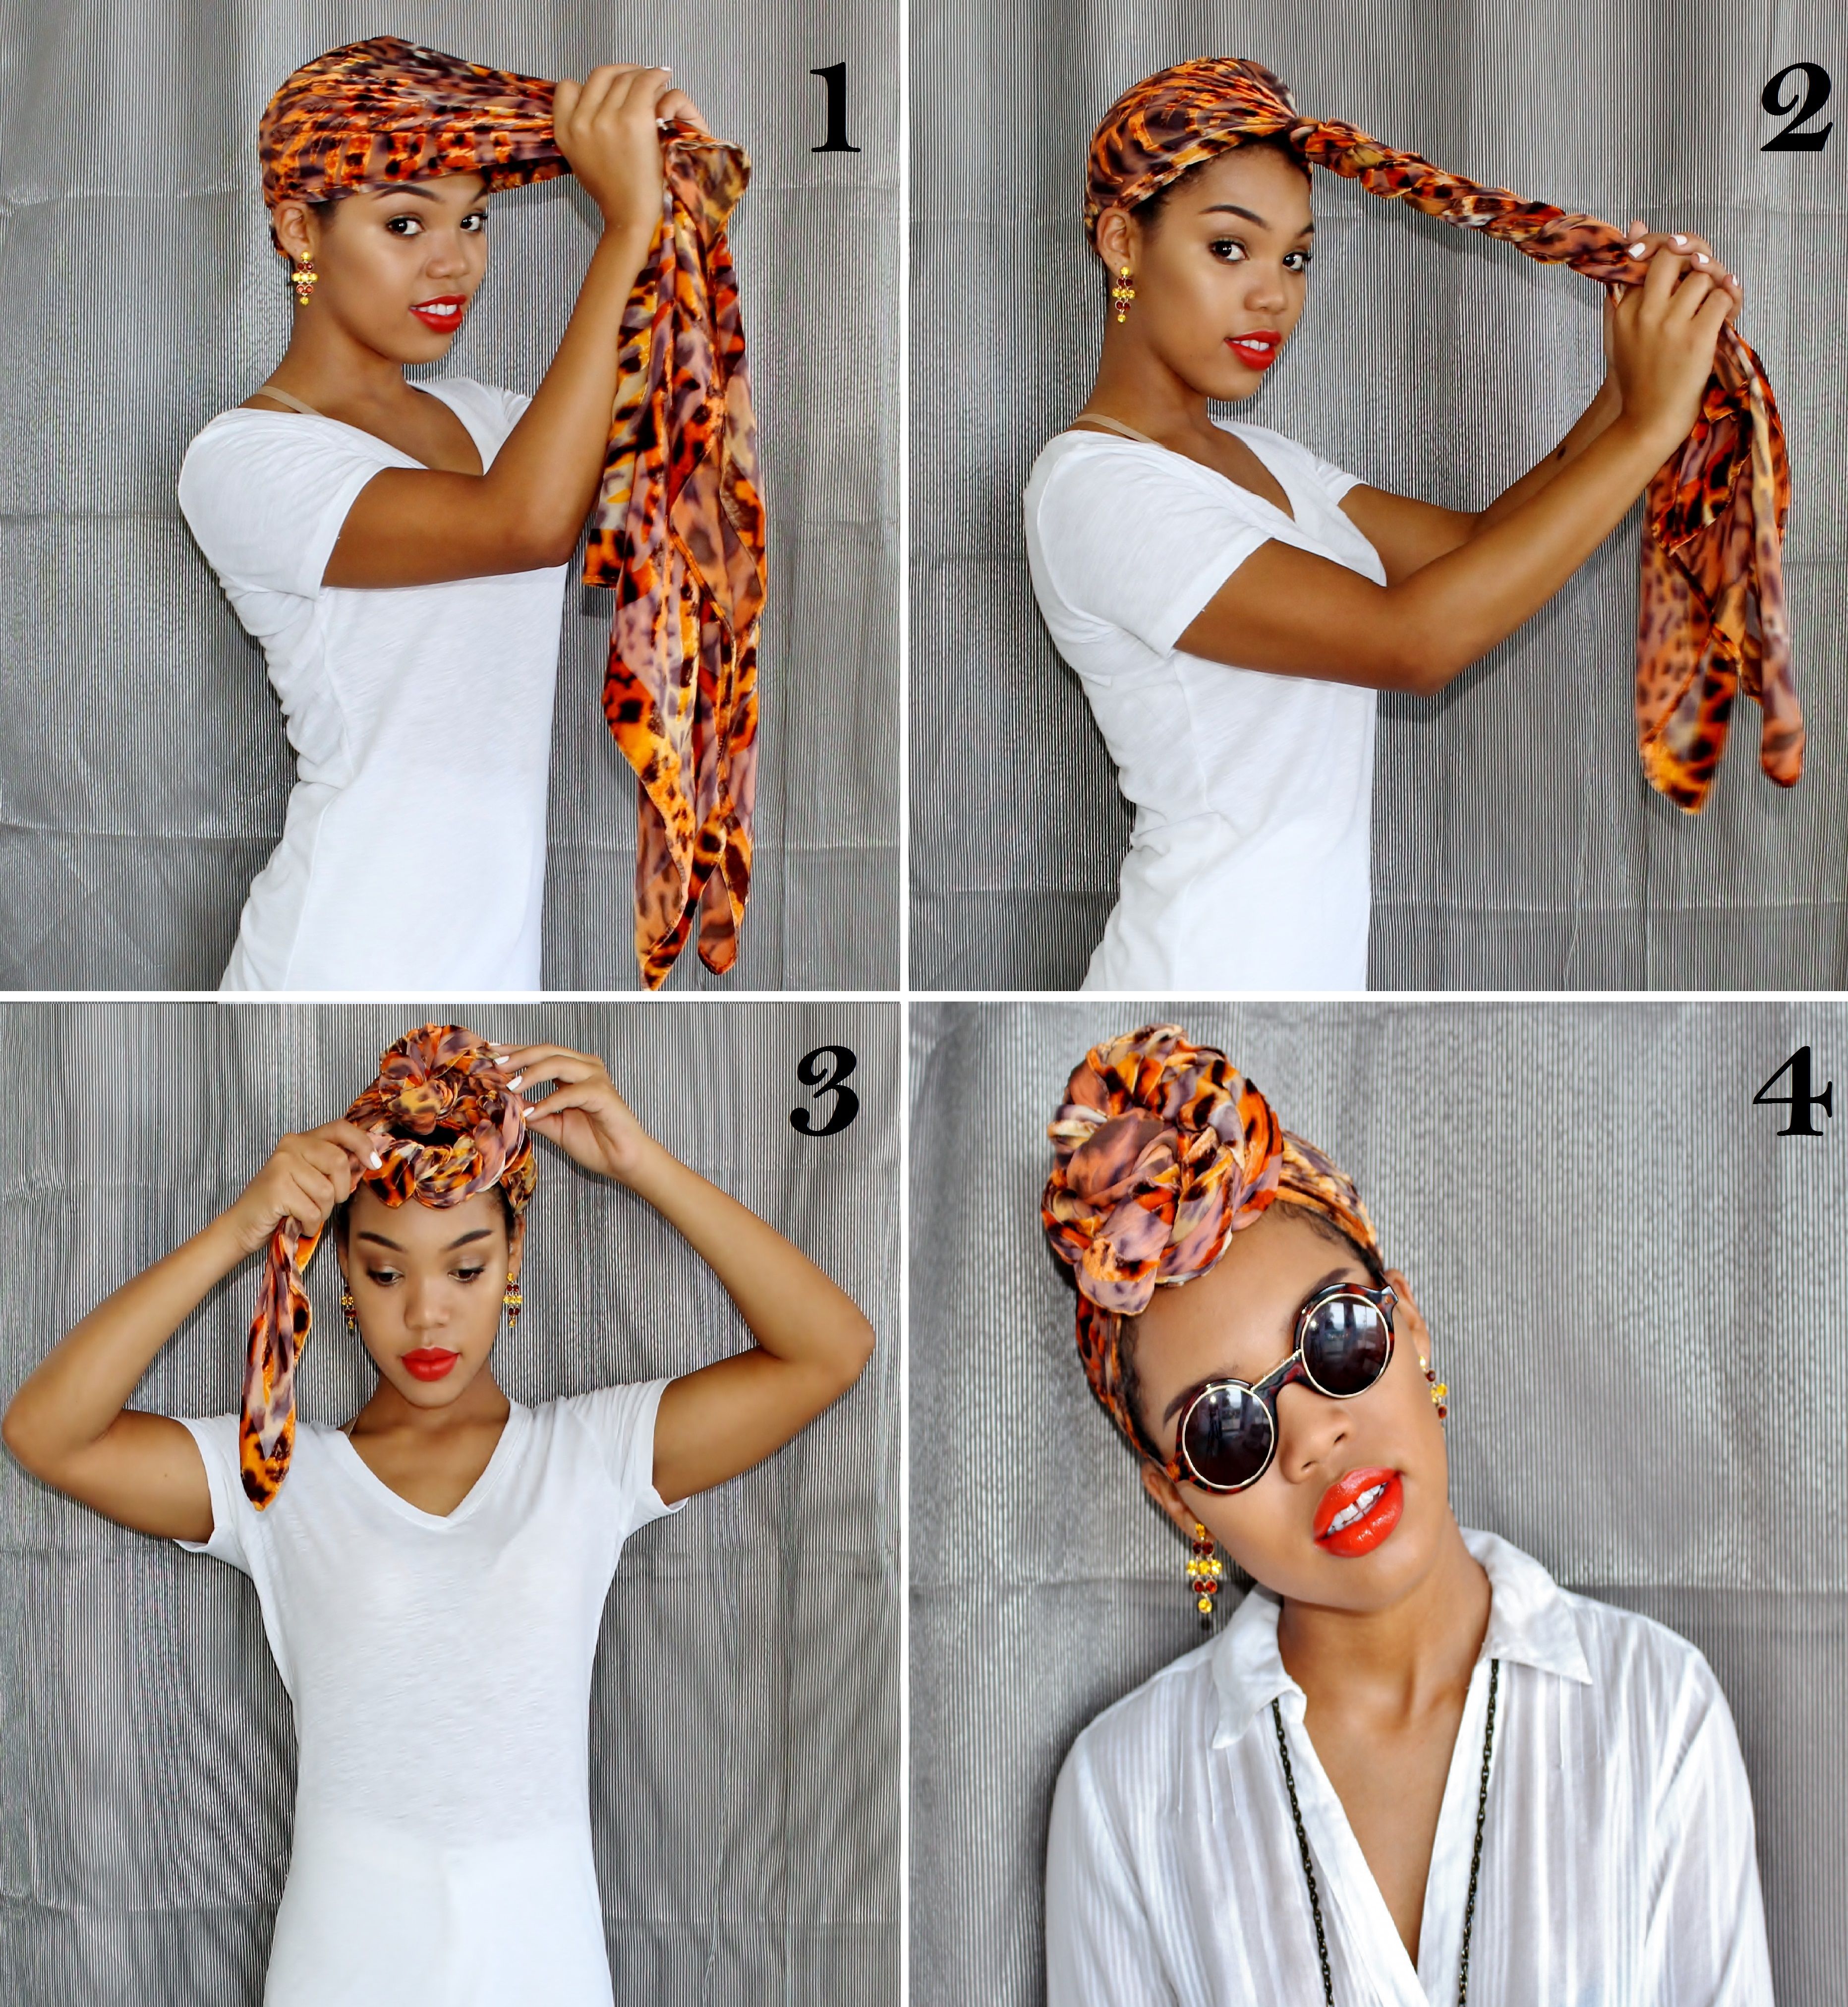 Красиво завязать платок на голове летом